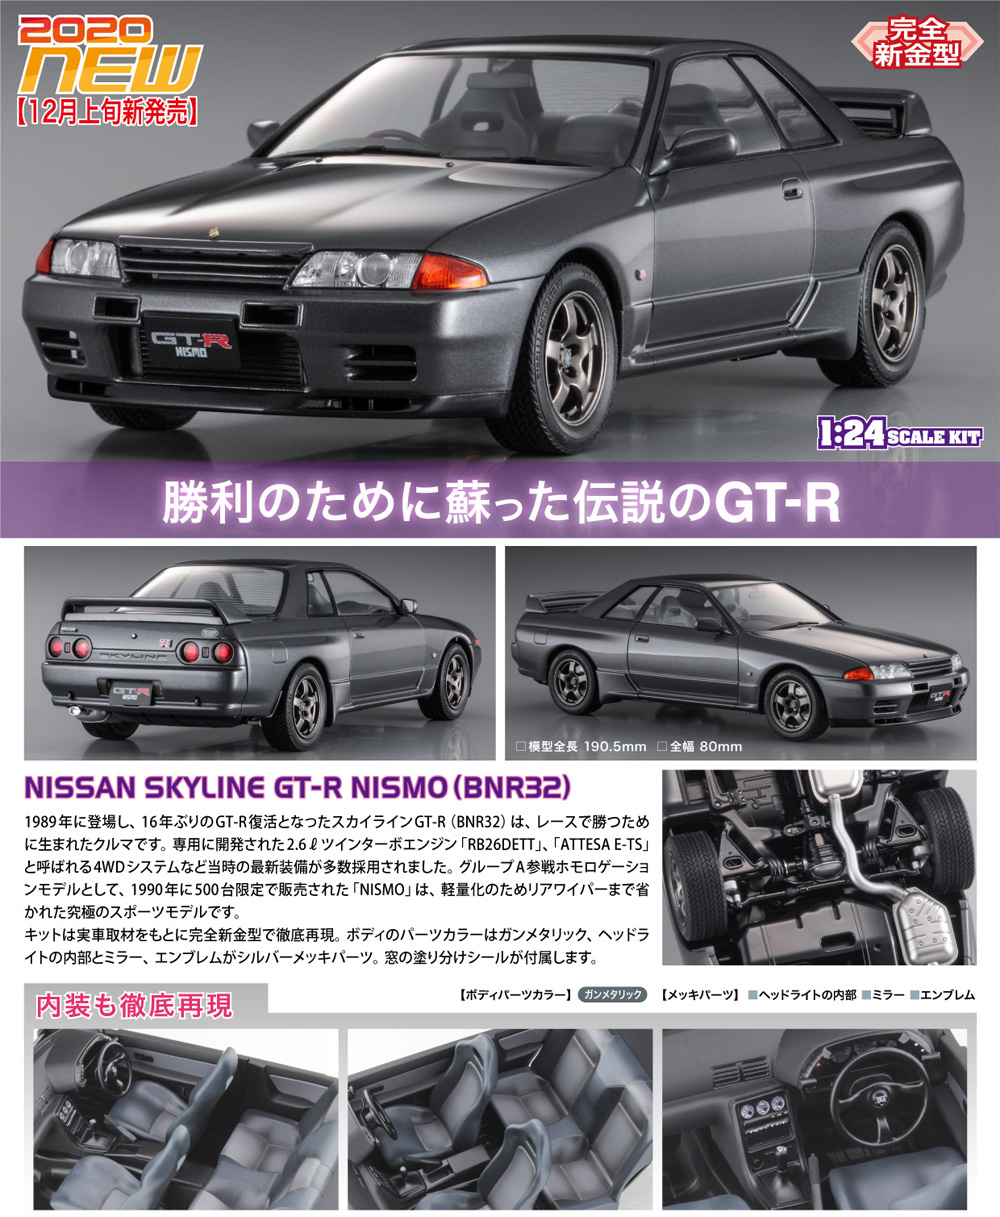 ニッサン スカイライン GT-R NISMO (BNR32) プラモデル (ハセガワ 1/24 自動車 HCシリーズ No.HC039) 商品画像_2